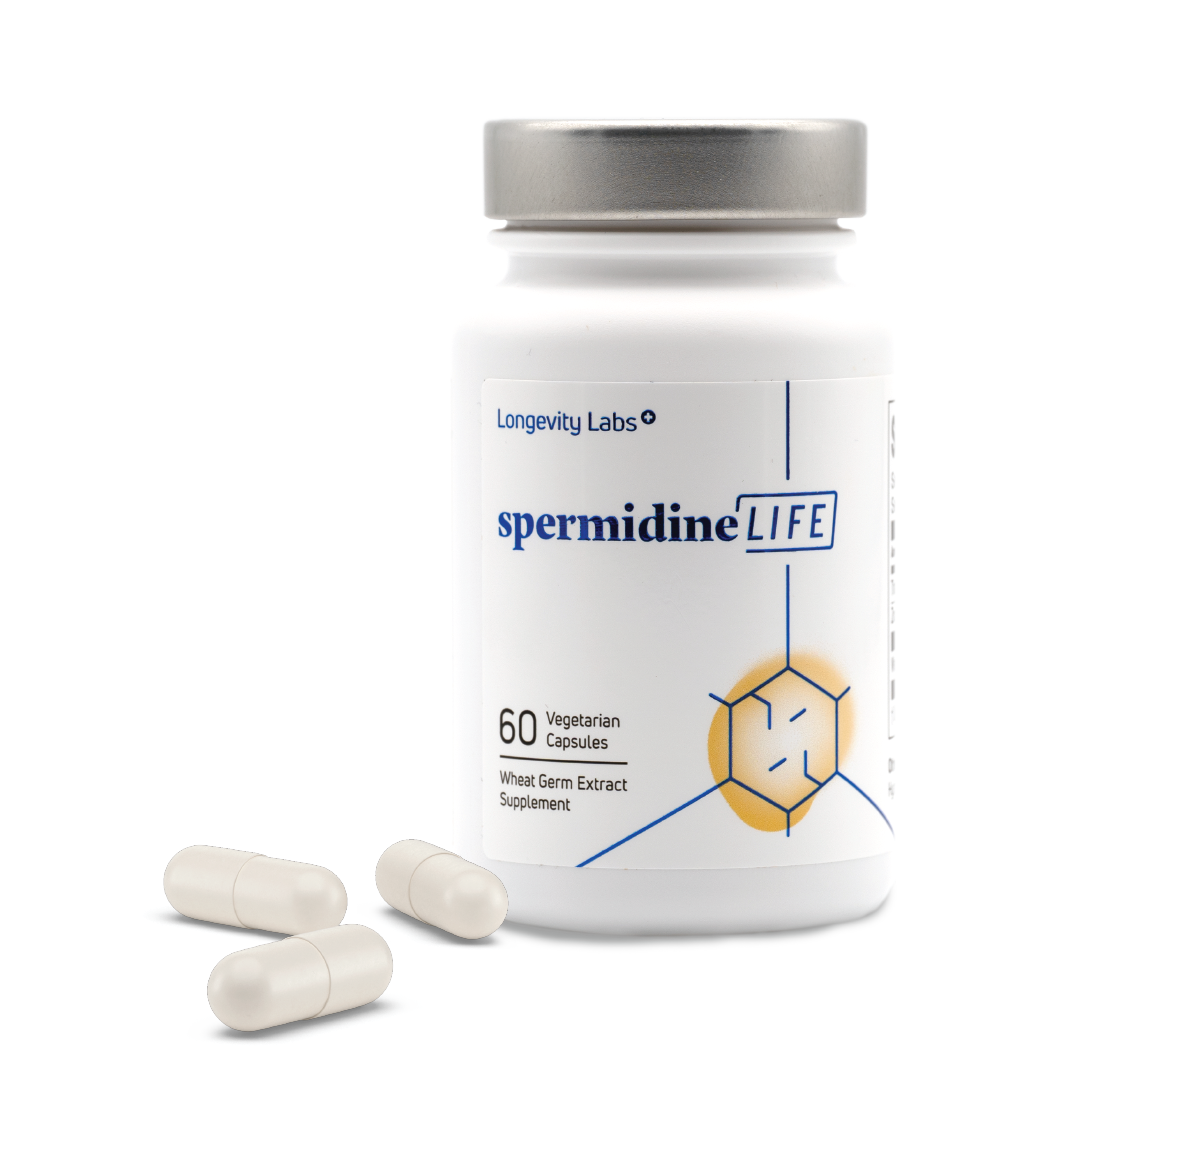 spermidineLIFE® world's first spermidine-rich wheat germ dietary supplement